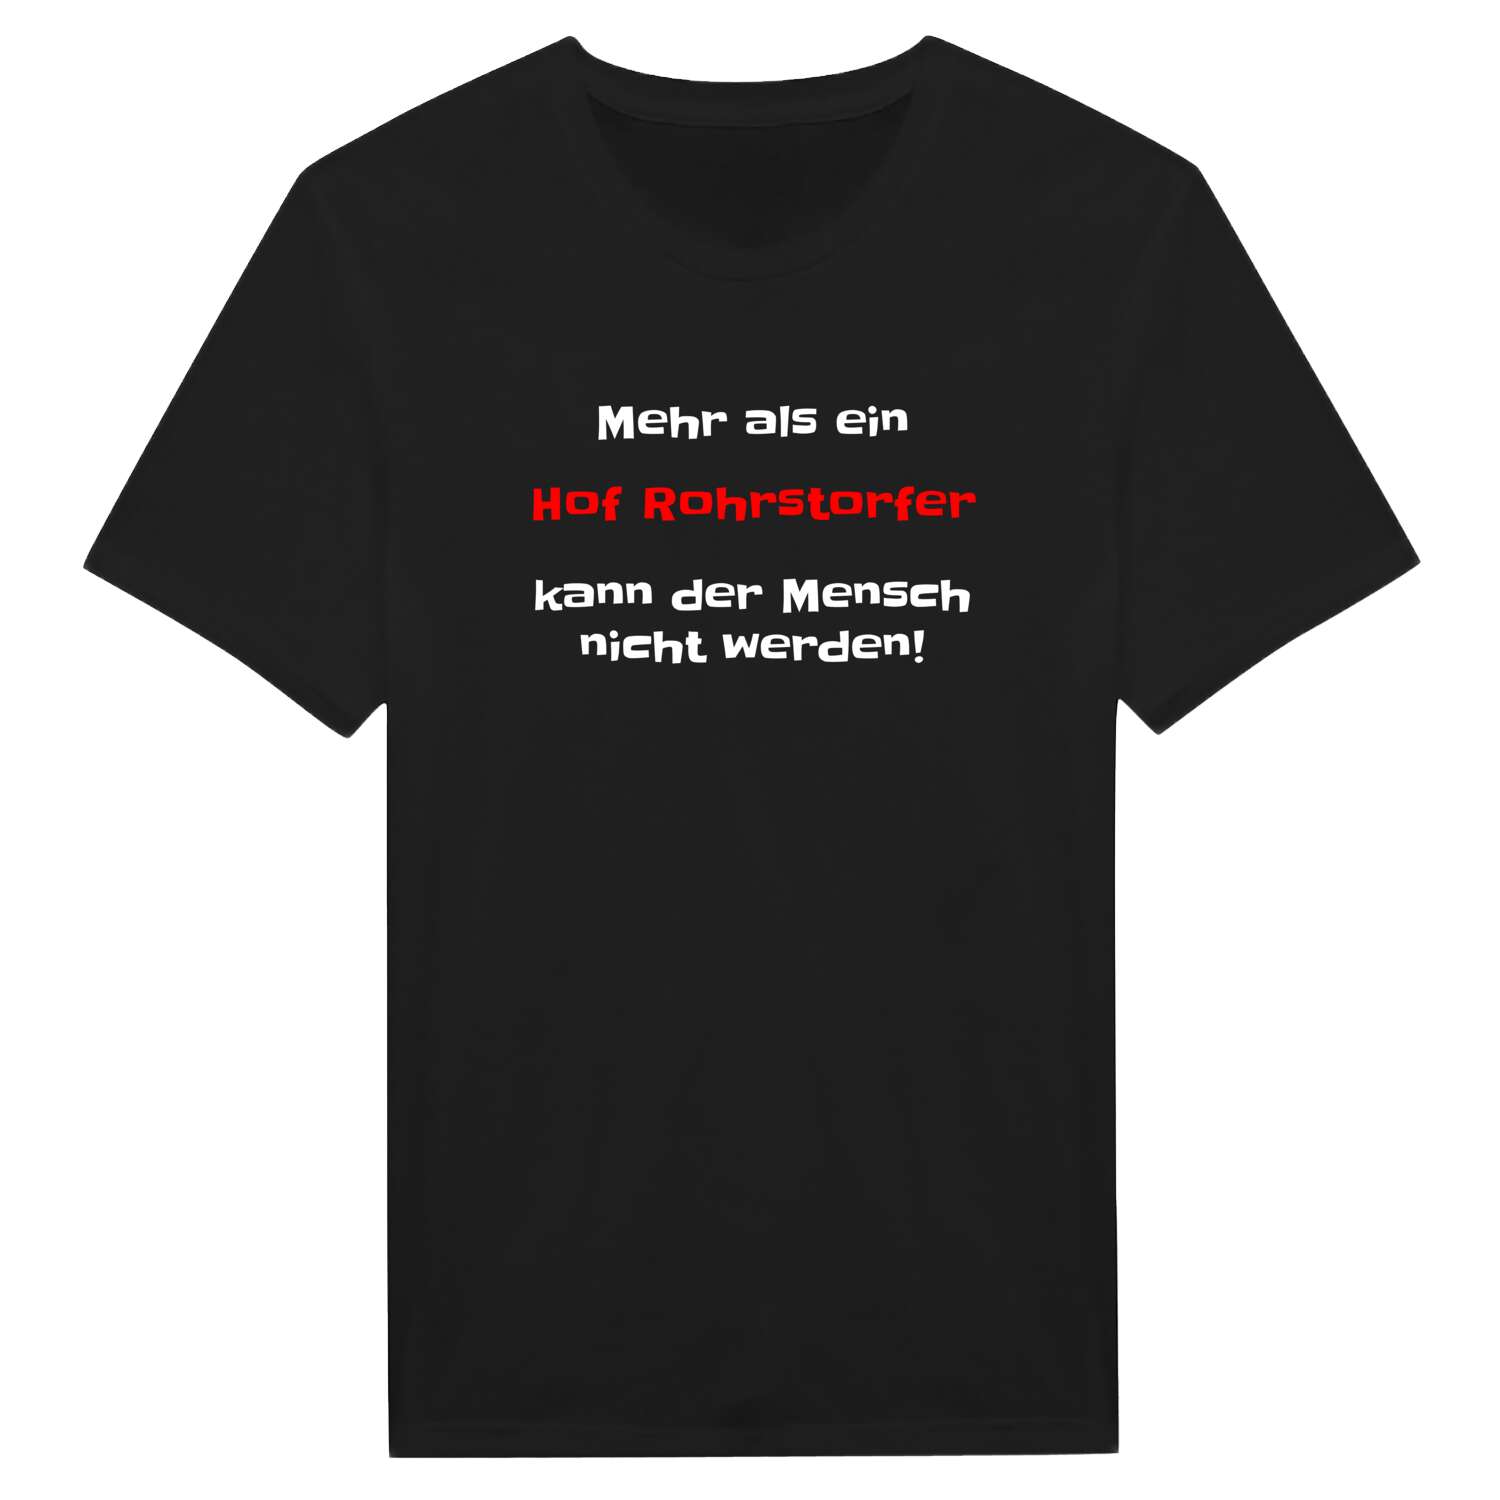 Hof Rohrstorf T-Shirt »Mehr als ein«